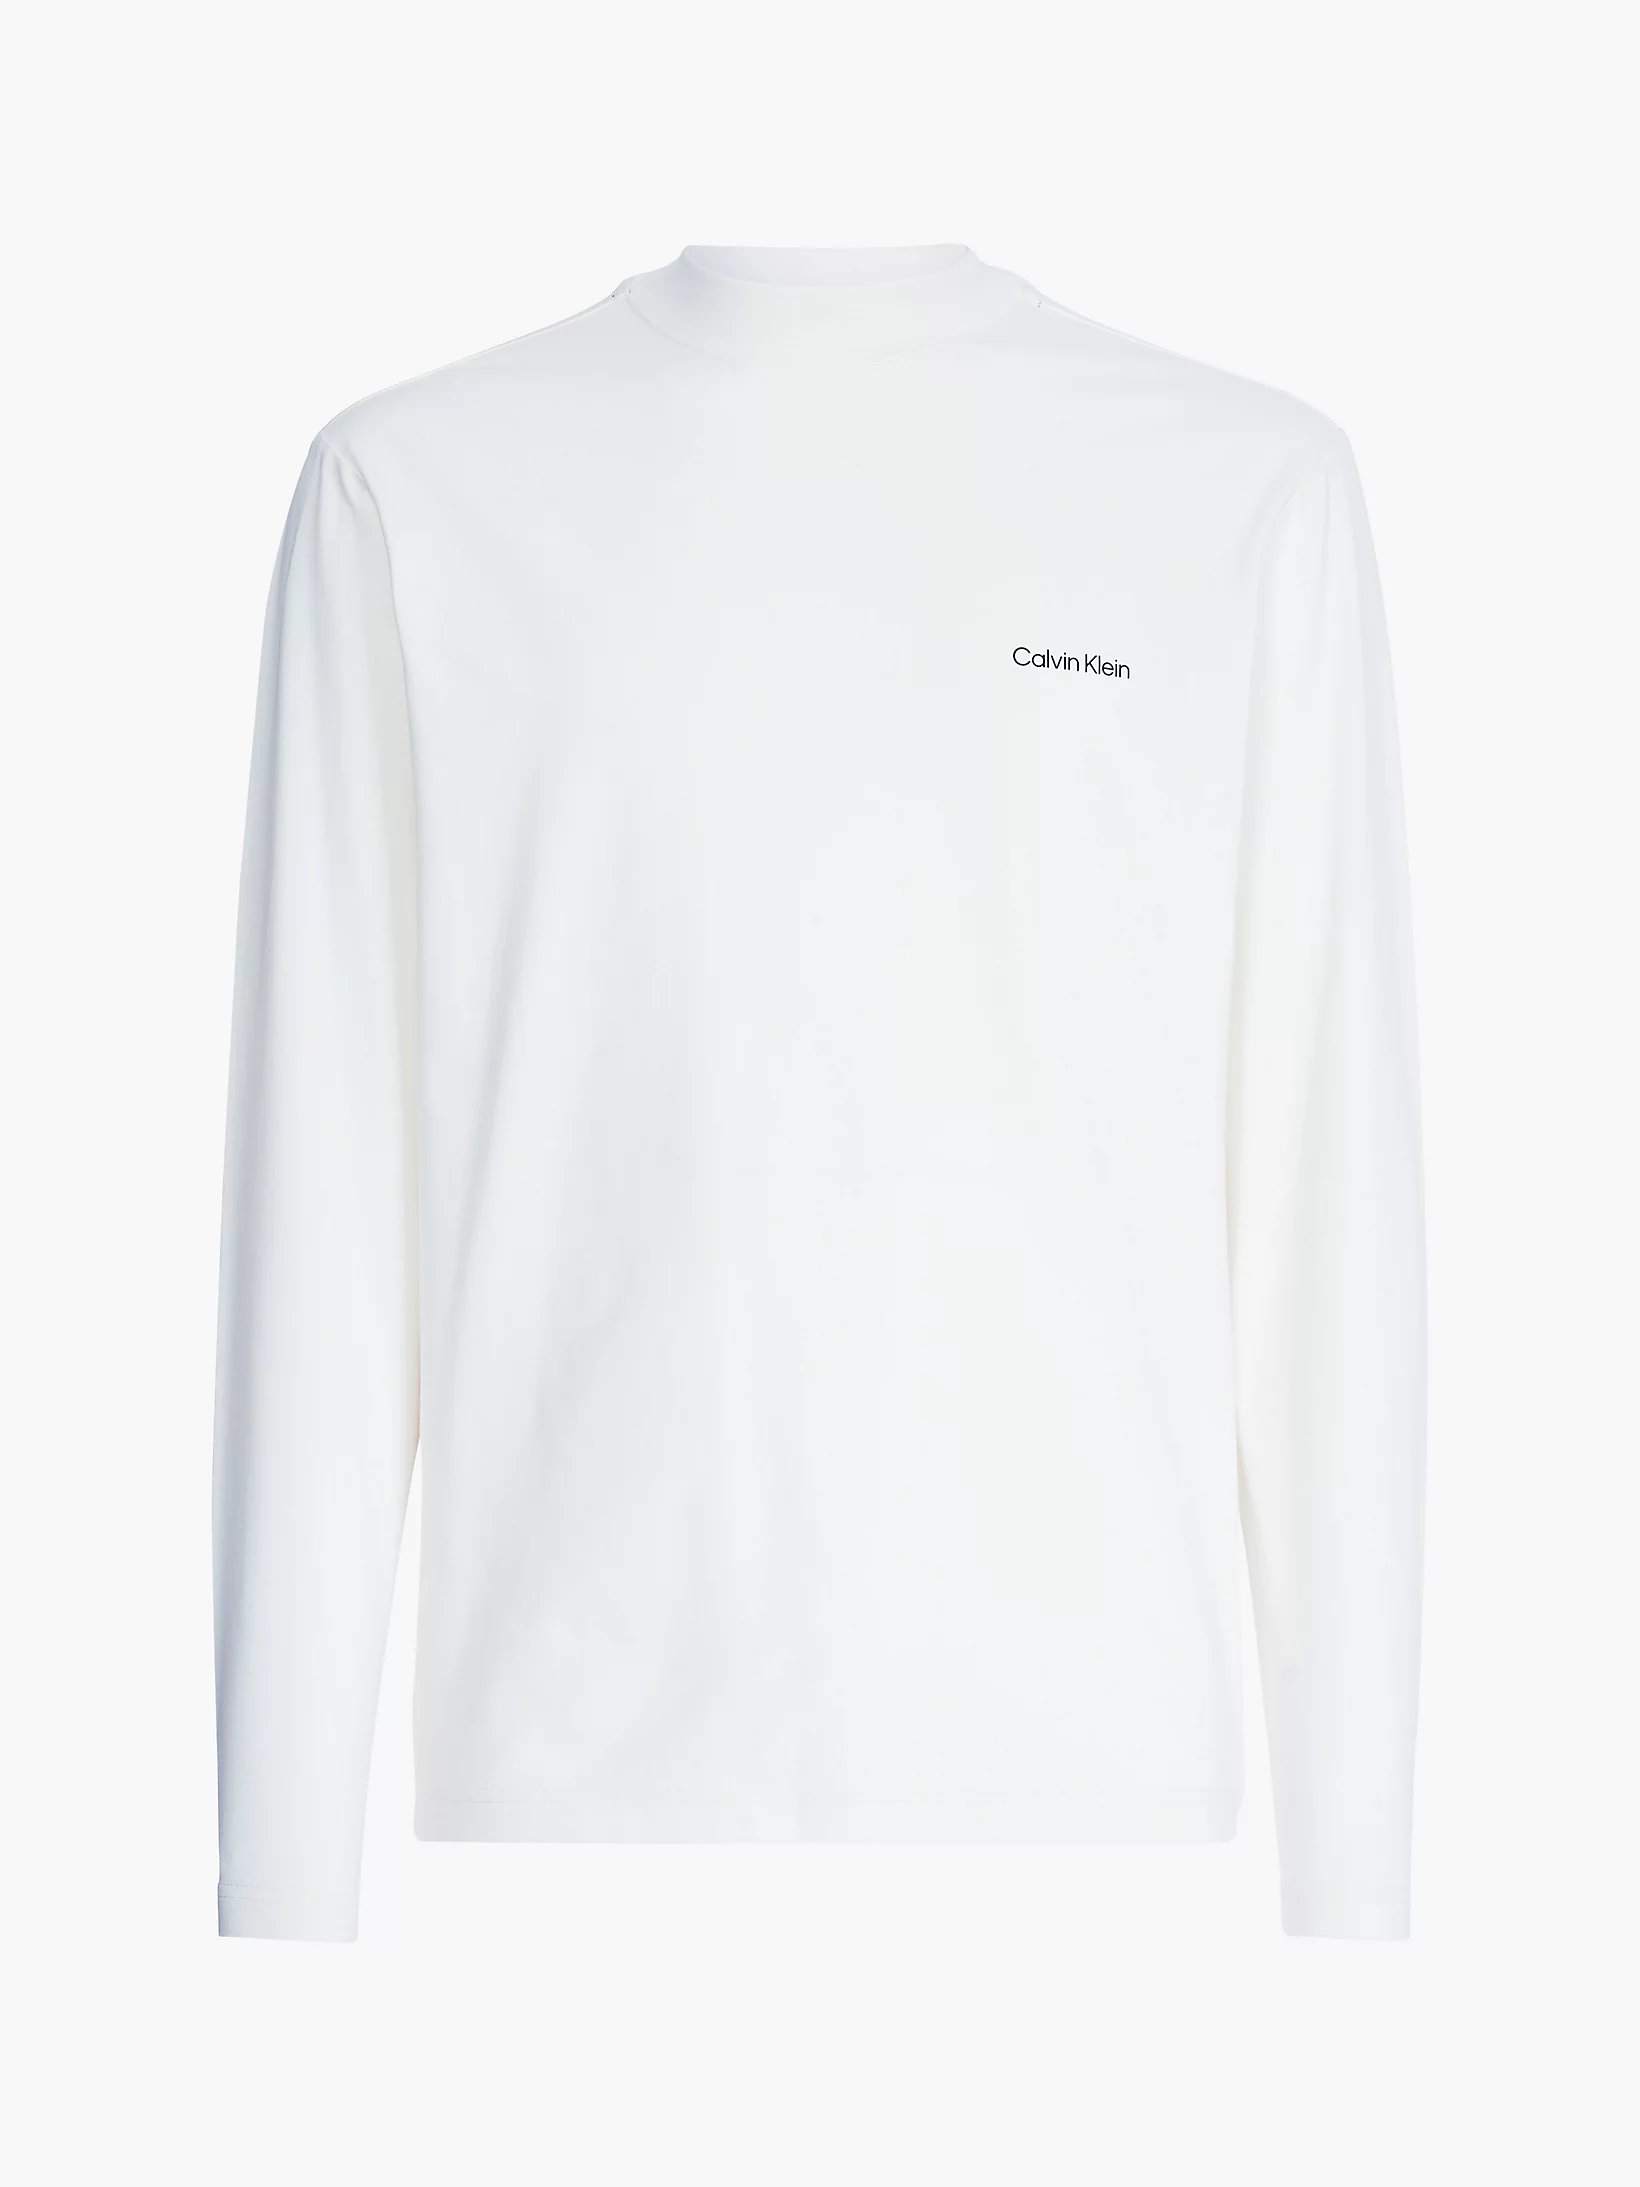 Ανδρική Μπλούζα Mock Λευκή Calvin Klein